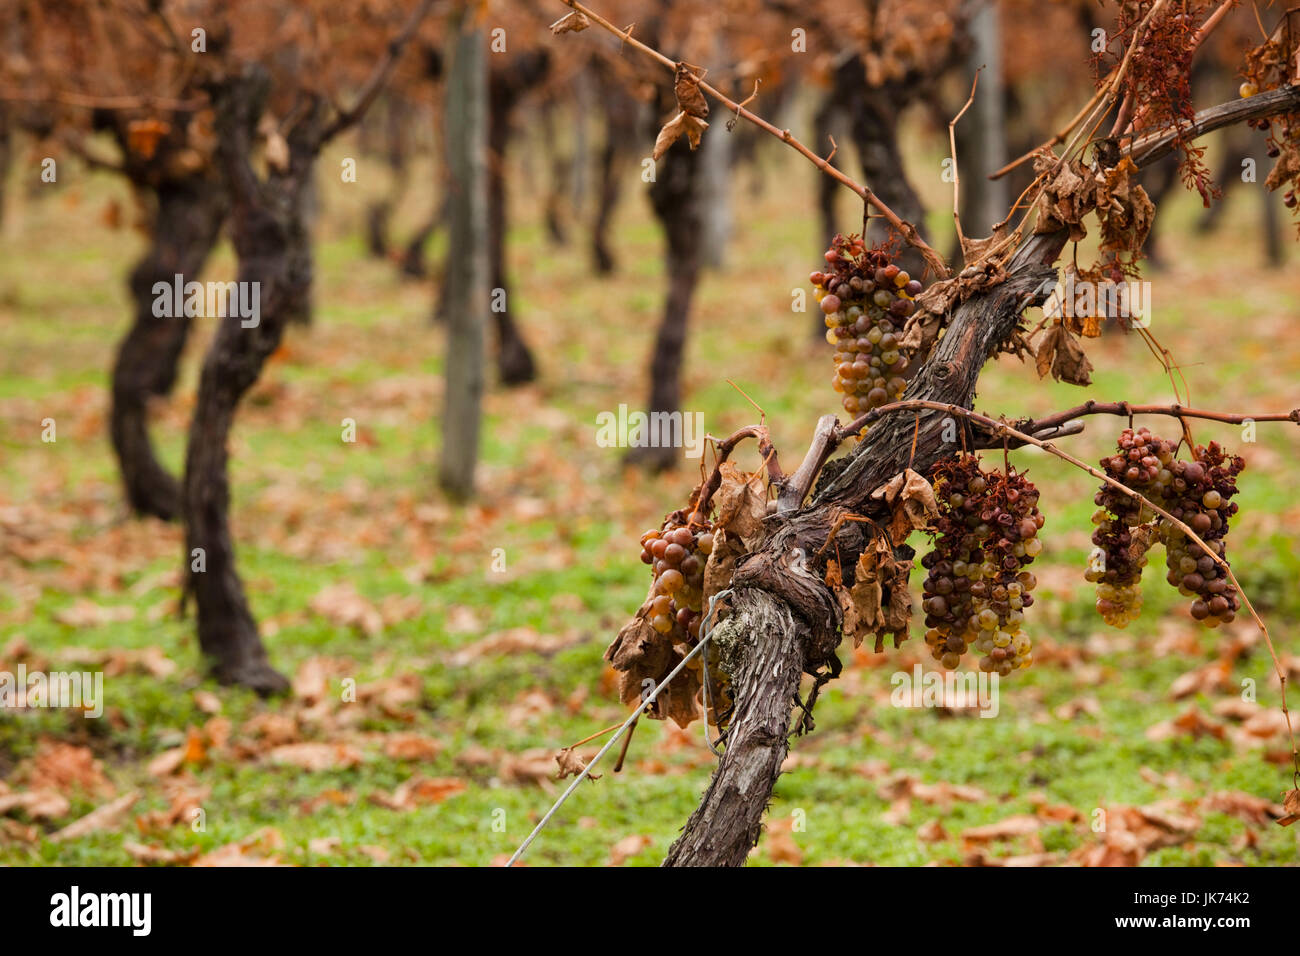 France, Poitou-Charentes Region, Charente Department, Cognac, vineyard, late autumn Stock Photo